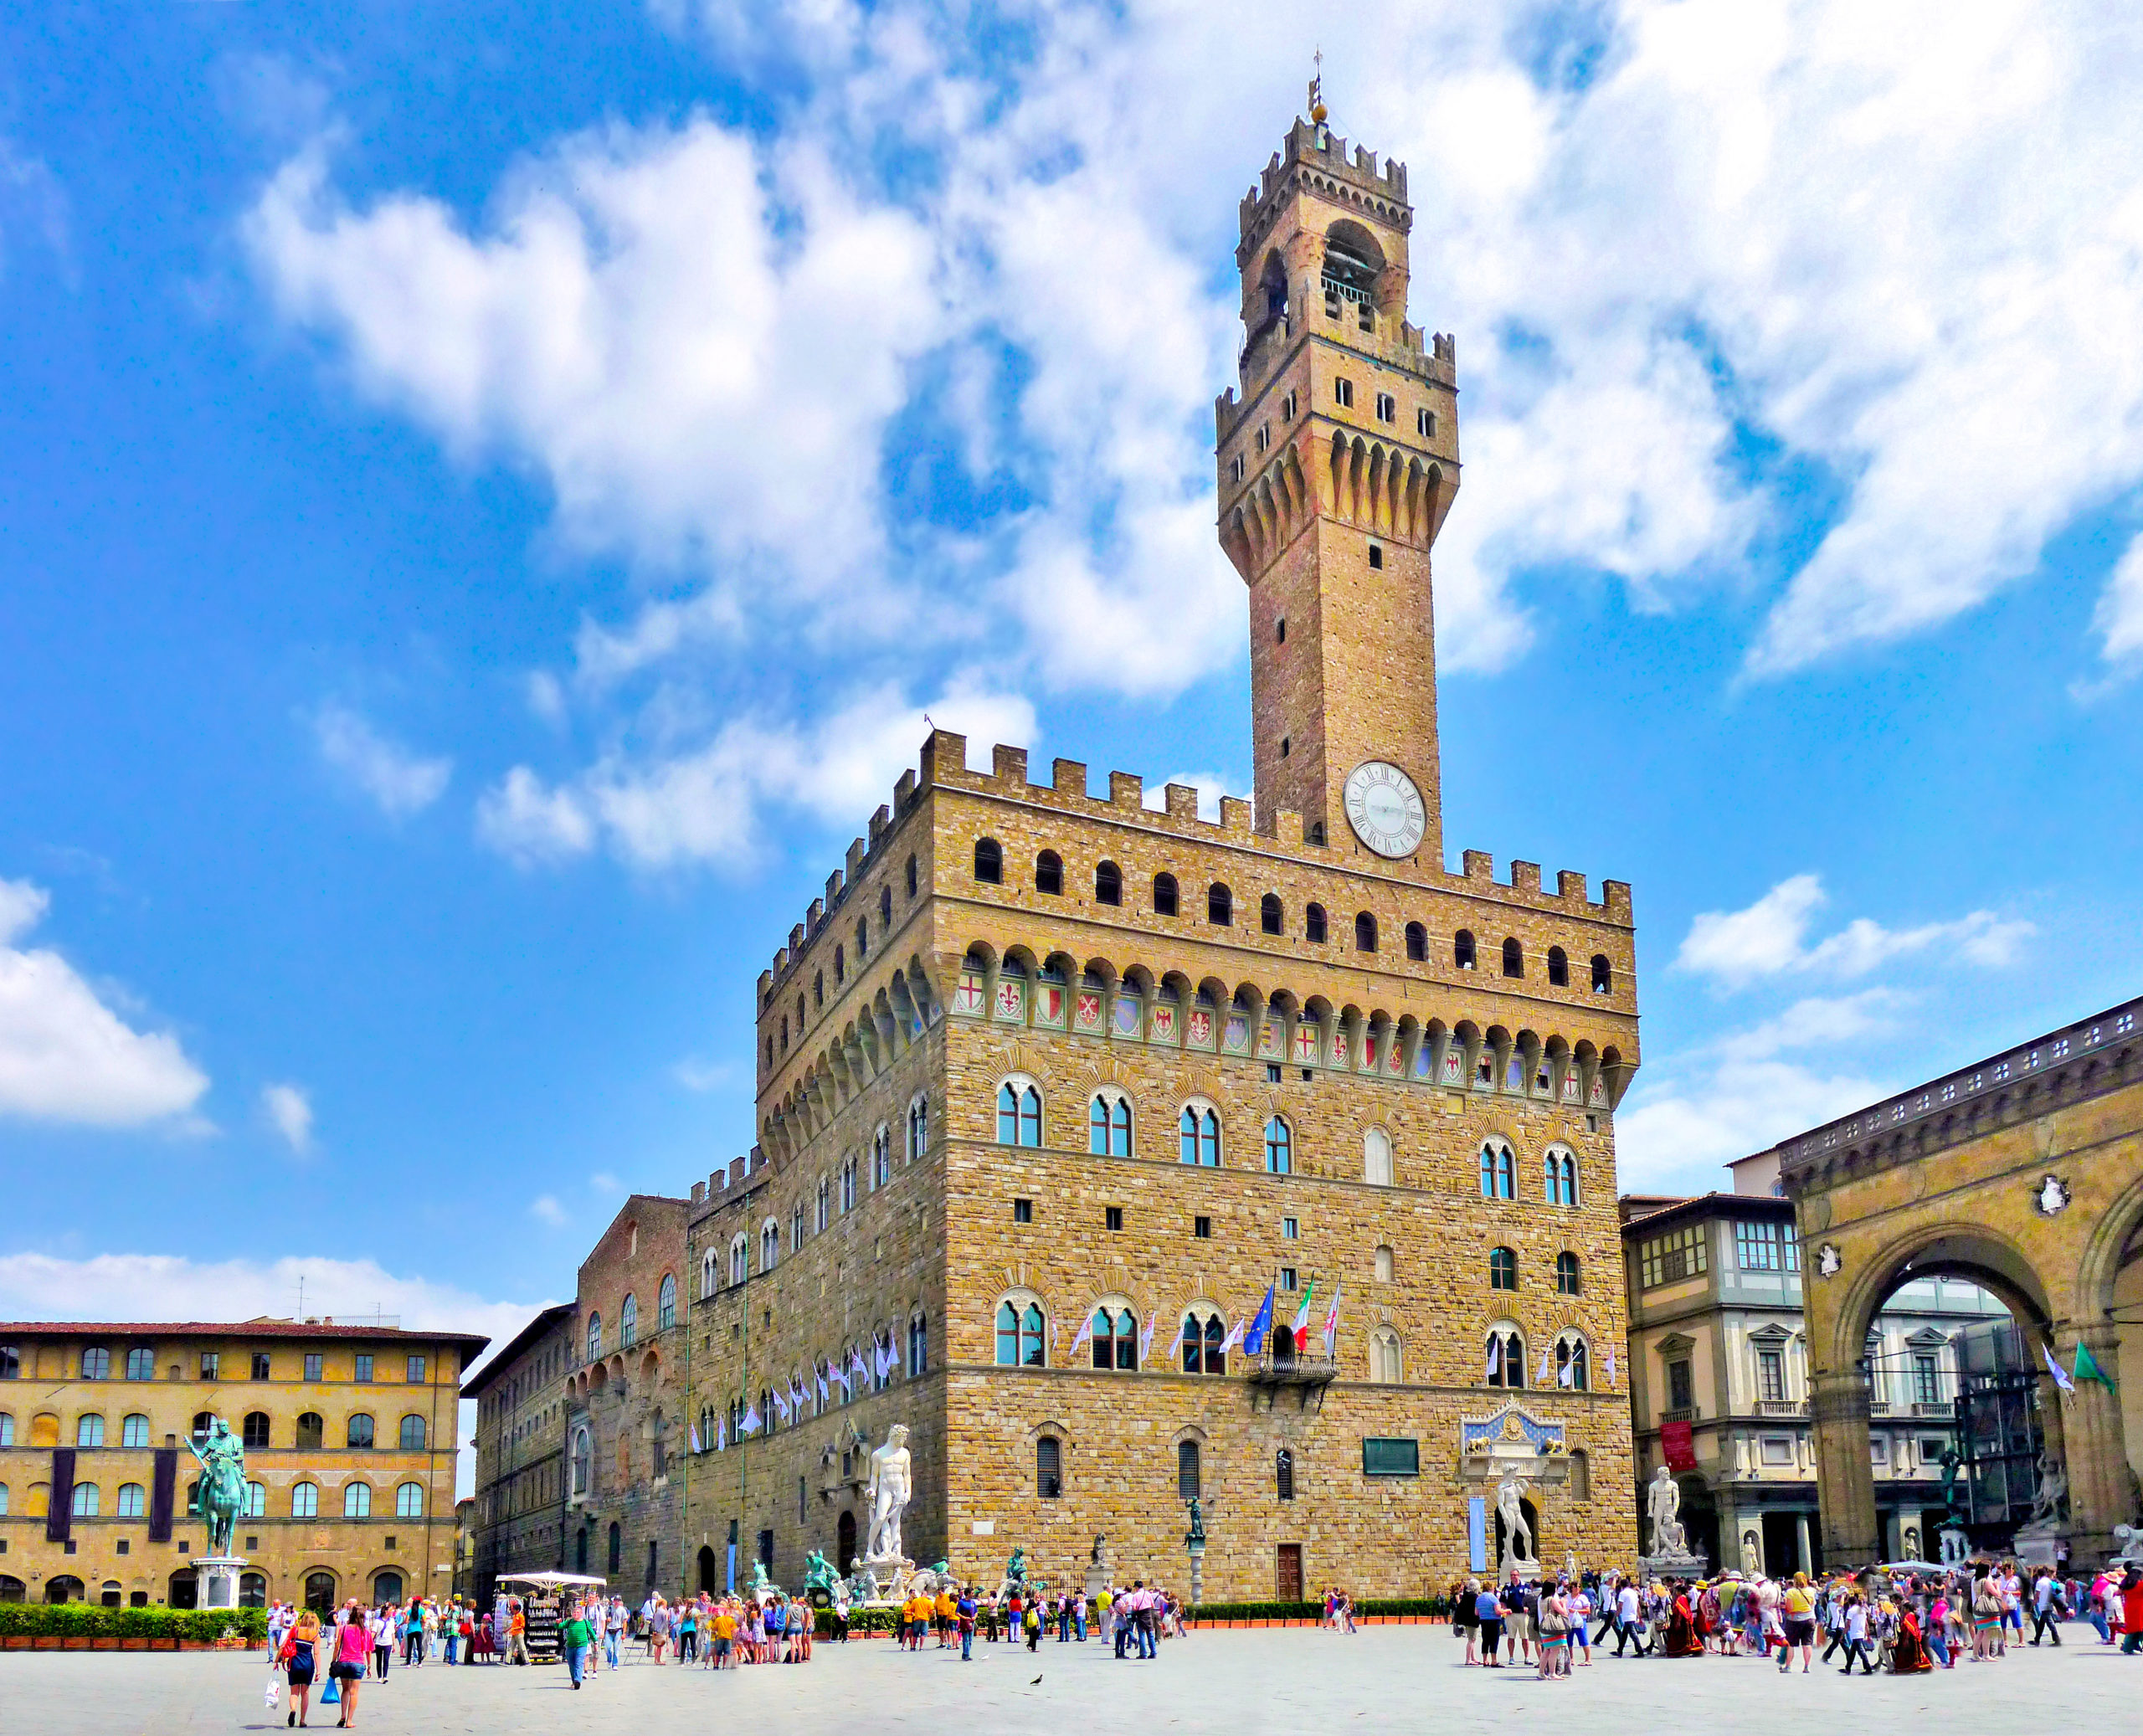 Piazza della Signoria and Palazzo Vecchio, Florence, Italy